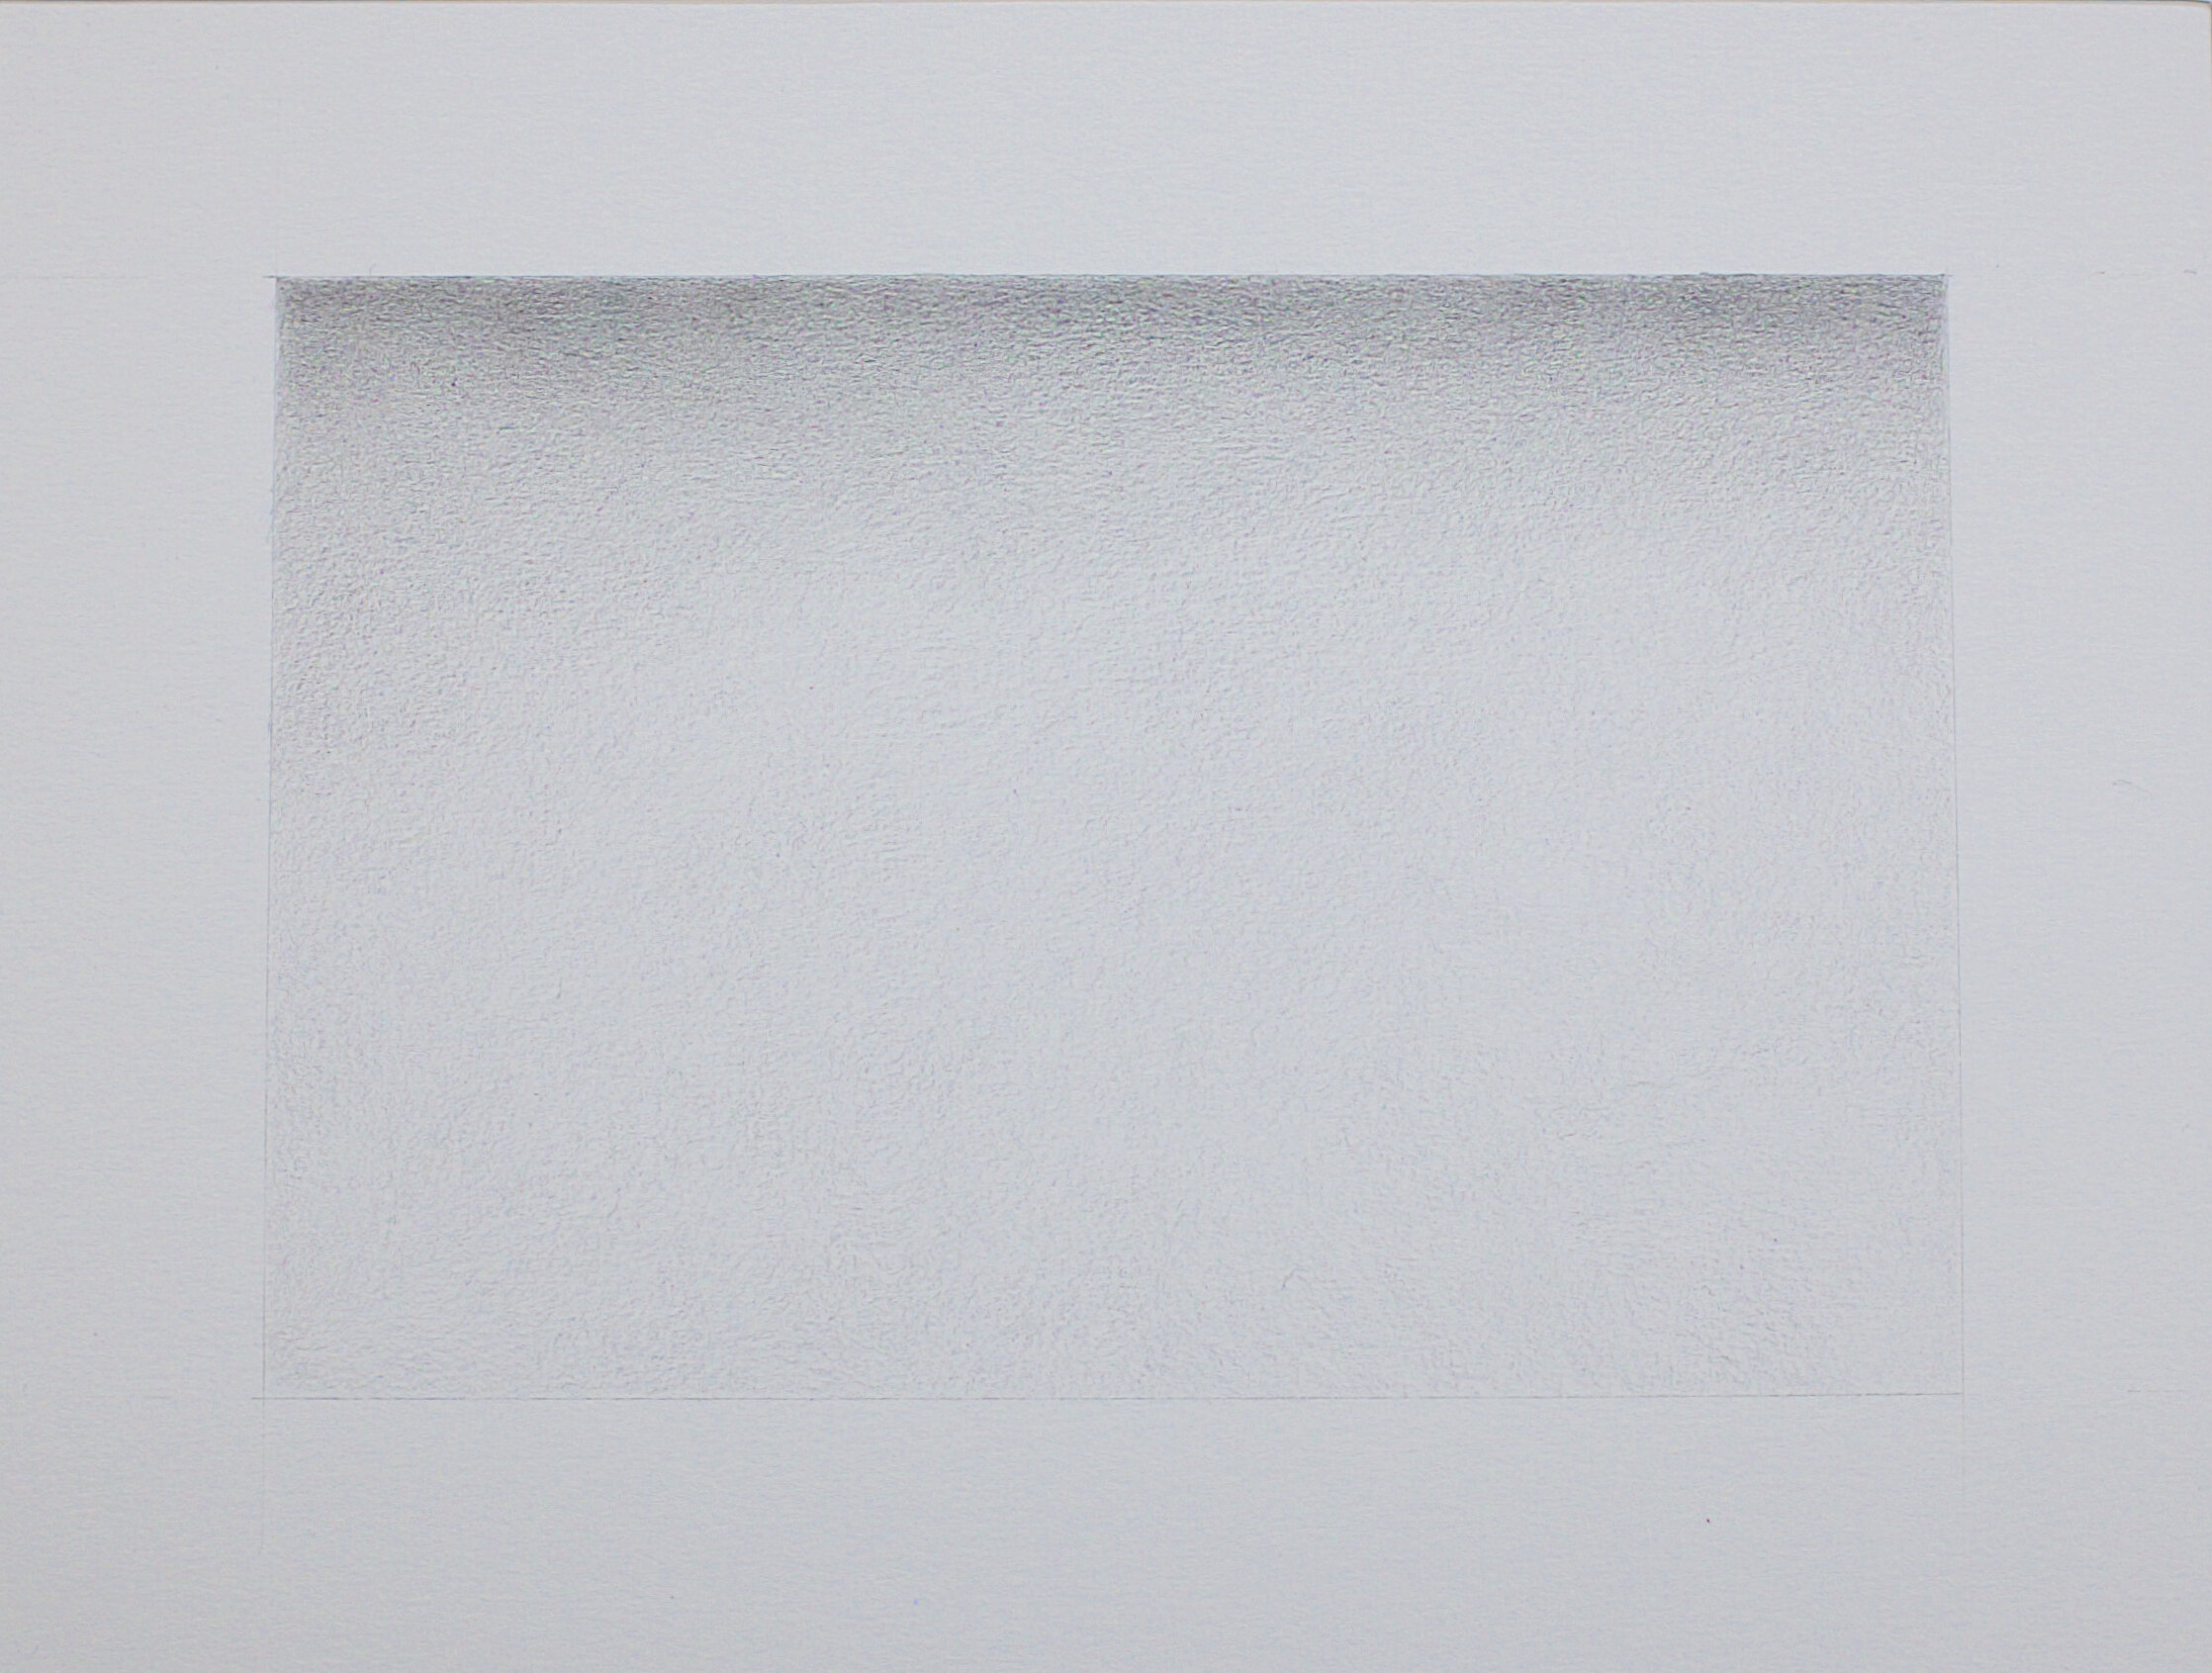  Zeichnung Nr. G05/2021 - 18 x 12 cm  - Bleistift auf Papier - im Passepartout 